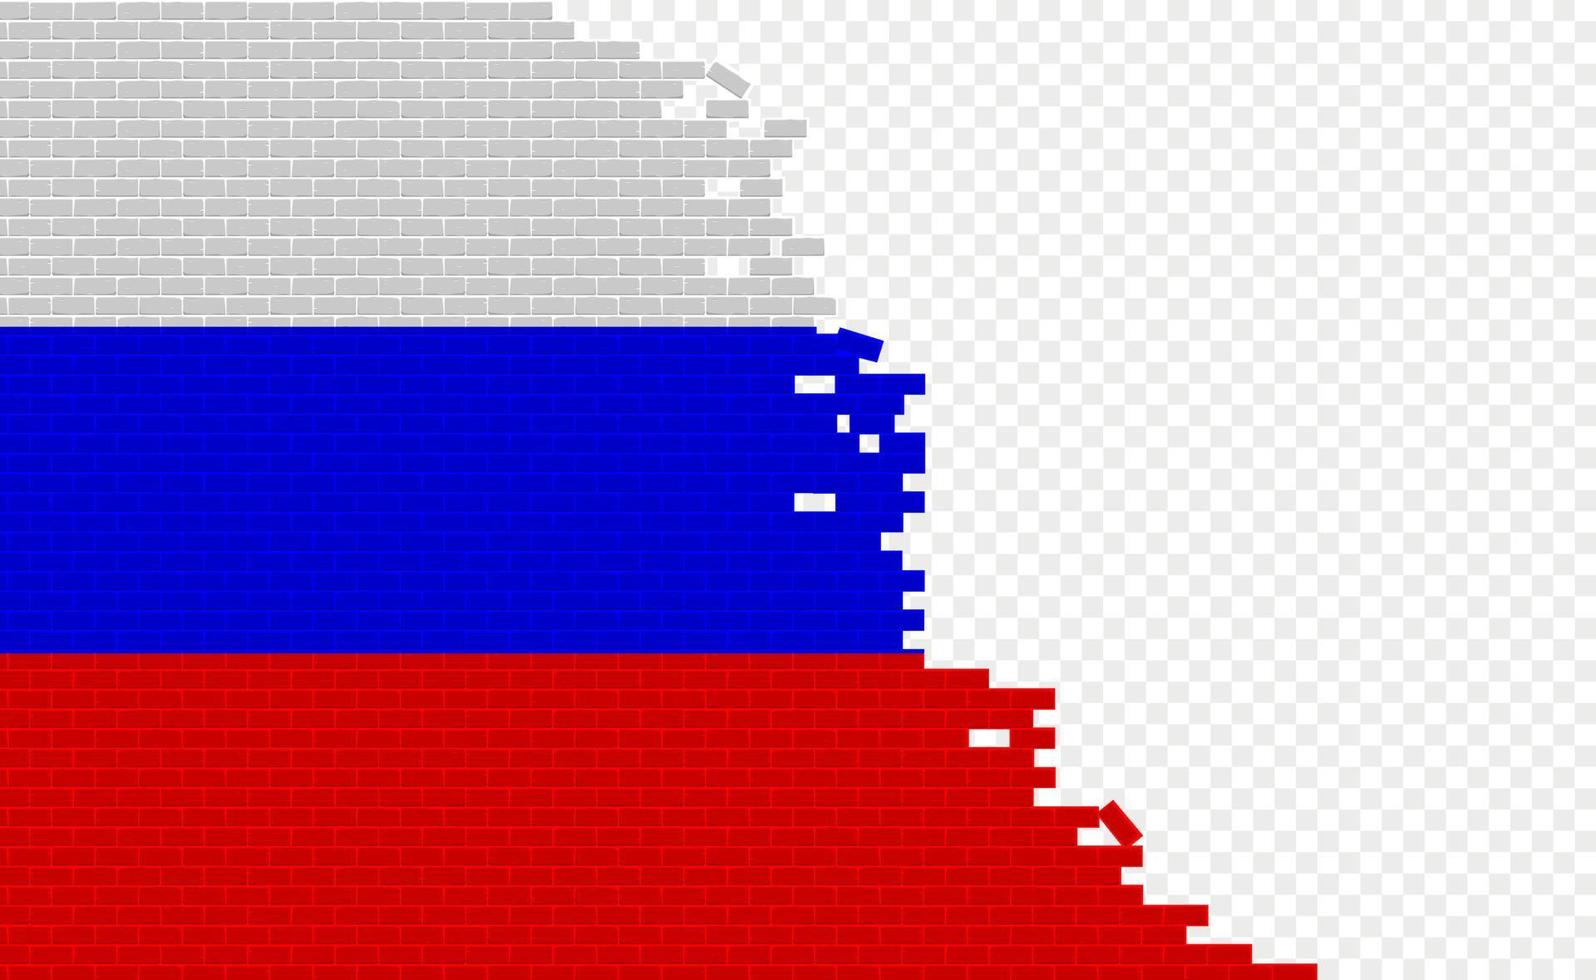 drapeau de la russie sur le mur de briques cassées. champ de drapeau vide d'un autre pays. comparaison de pays. édition facile et vecteur en groupes.